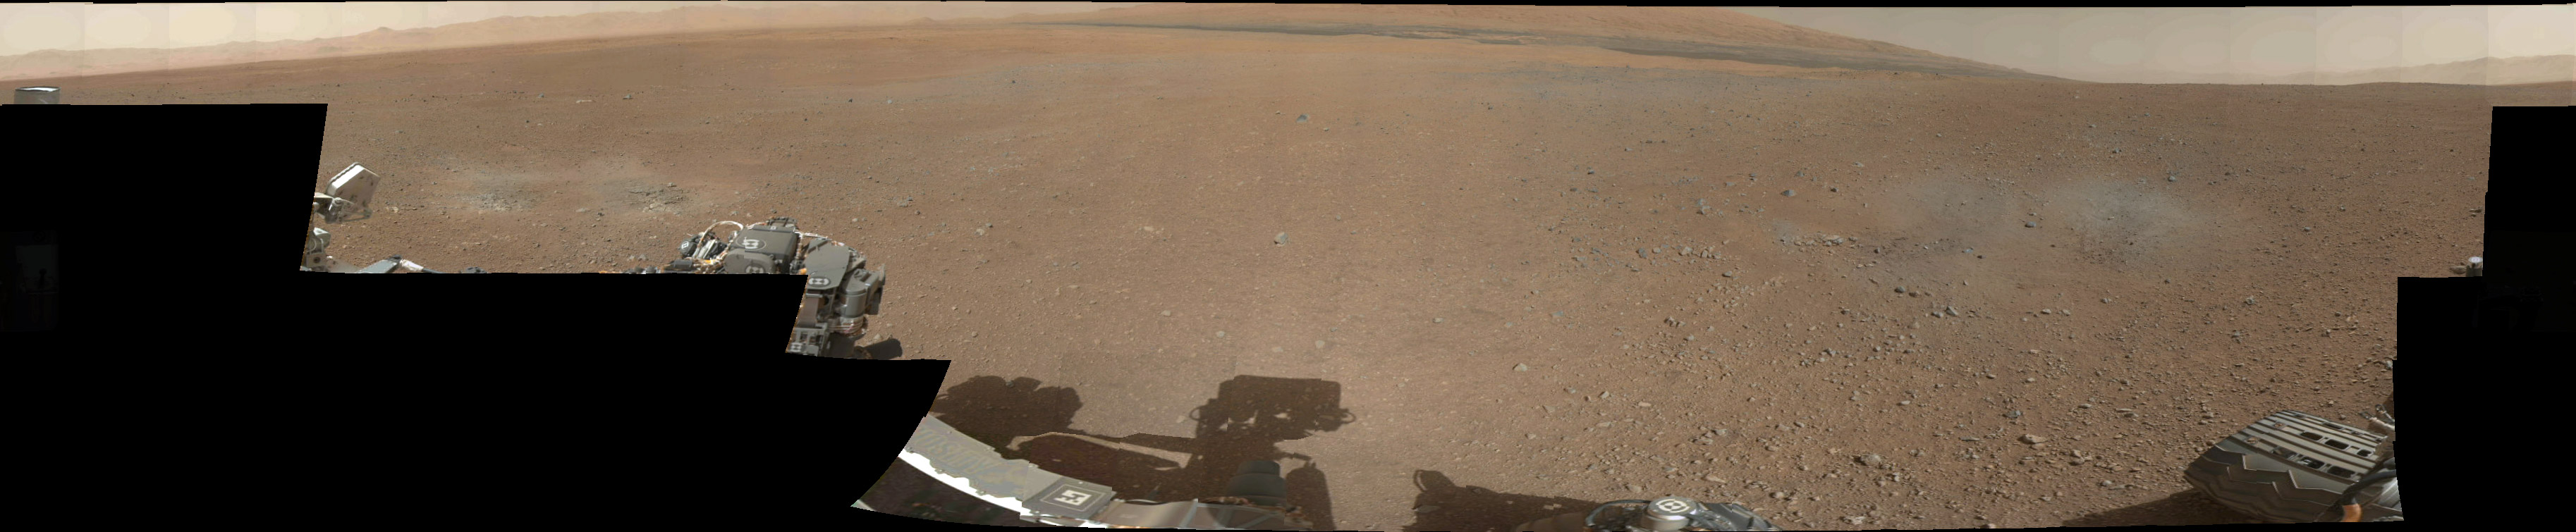 Sur Mars, Curiosity ne s'est heureusement pas arrêté et la mission JPL se poursuit. Il roule actuellement vers le mont Sharp, dont les premières pentes sont visibles sur ce panorama, réalisé en août 2012, peu après l'atterrissage. © Nasa, JPL